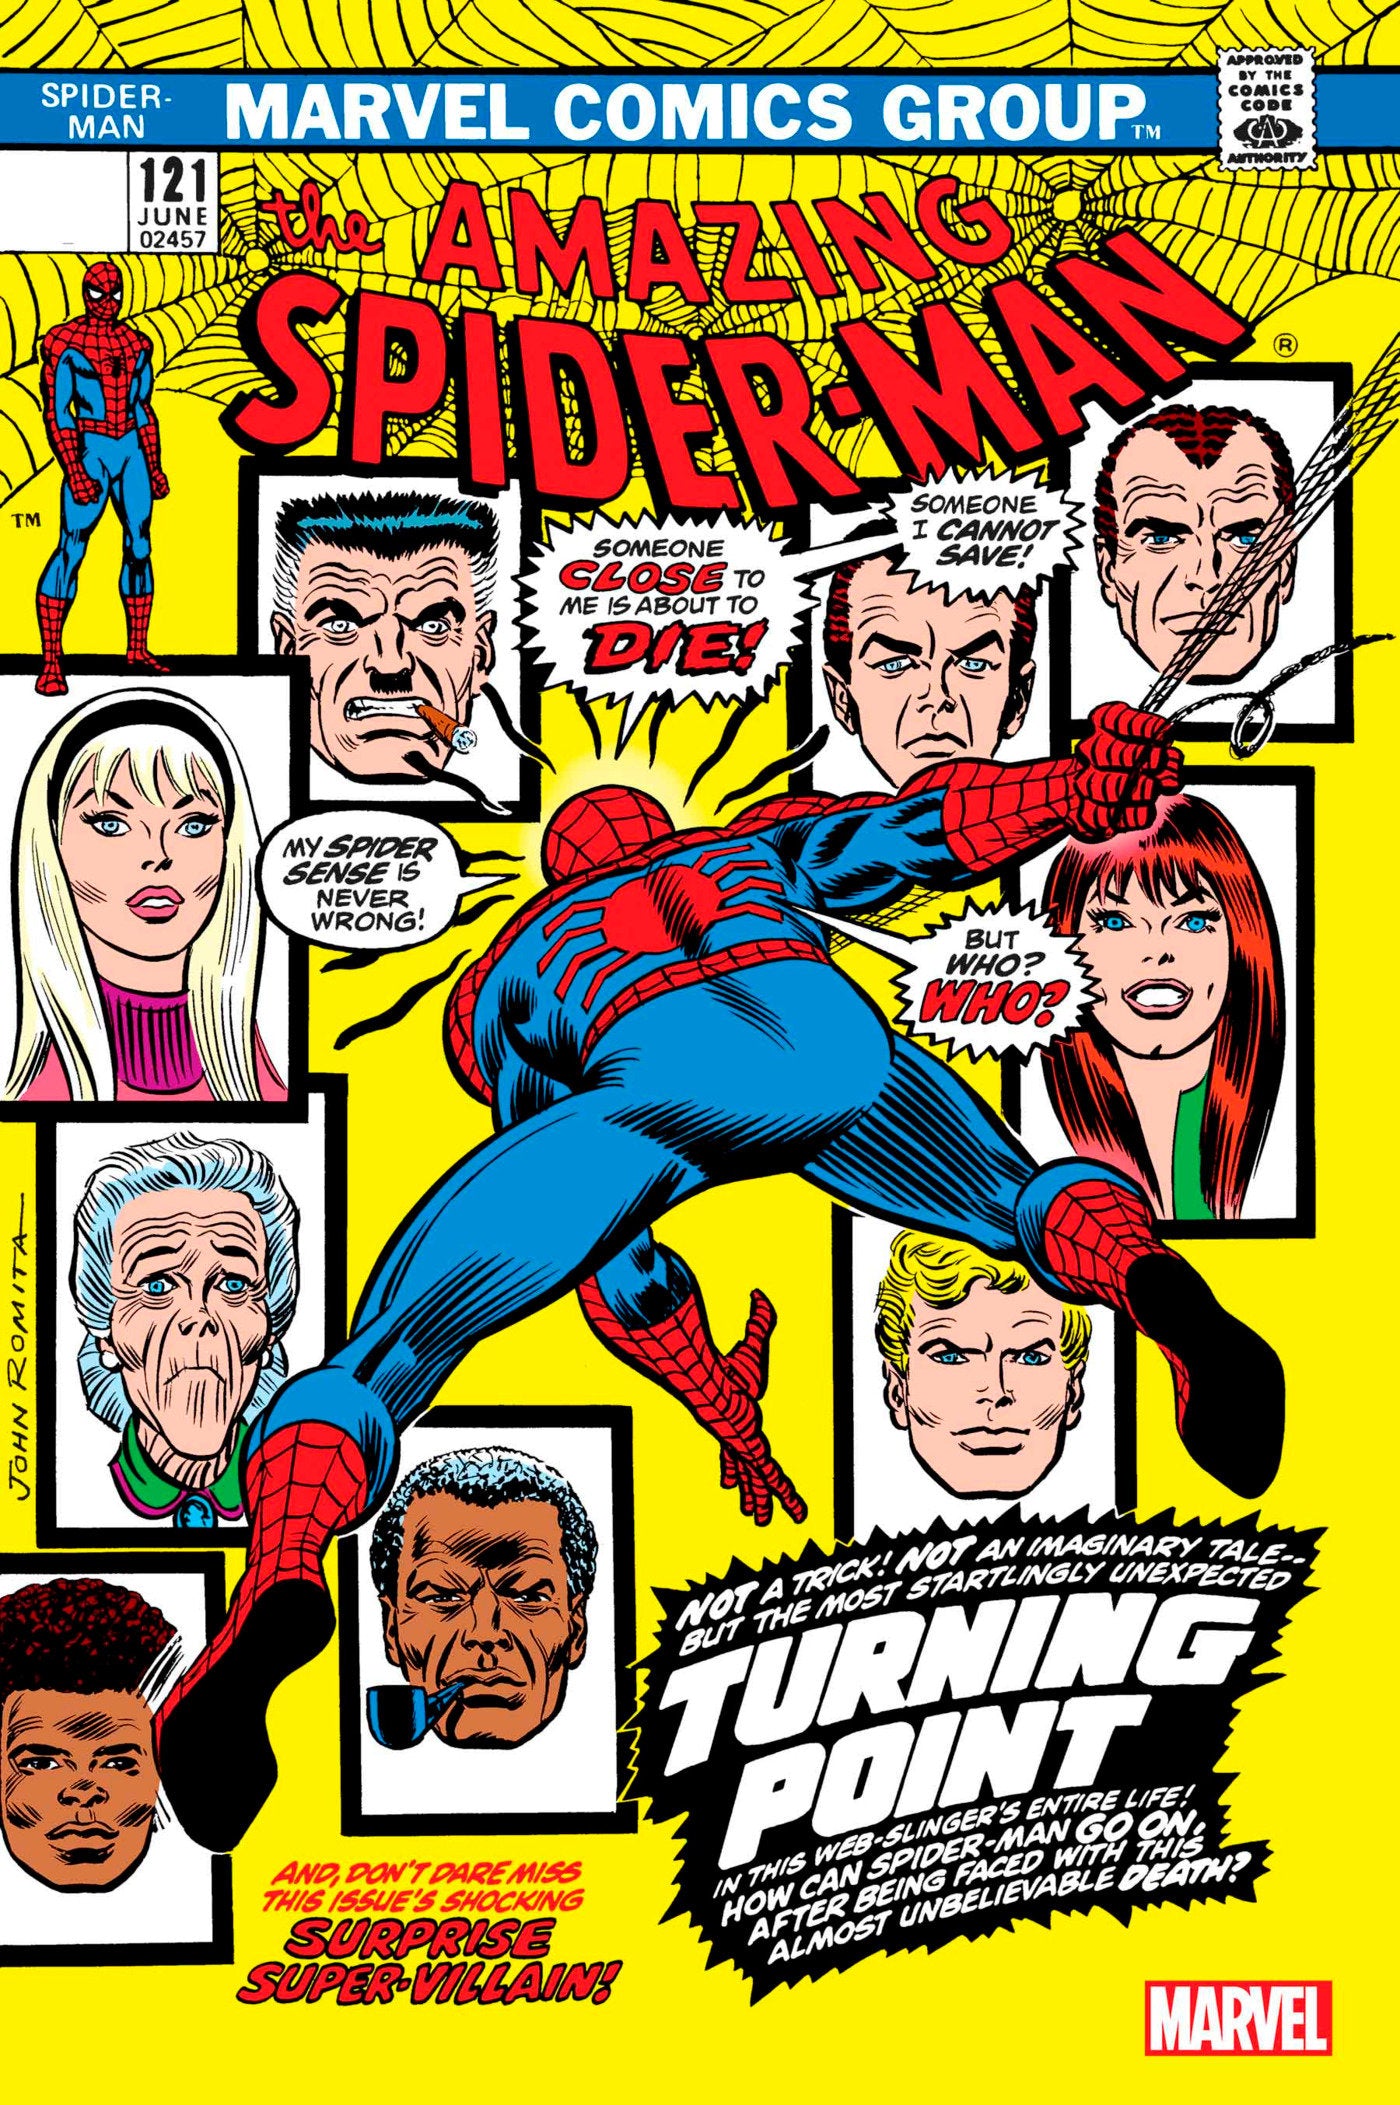 Amazing Spider-Man 121 Facsimile Edition | Game Master's Emporium (The New GME)